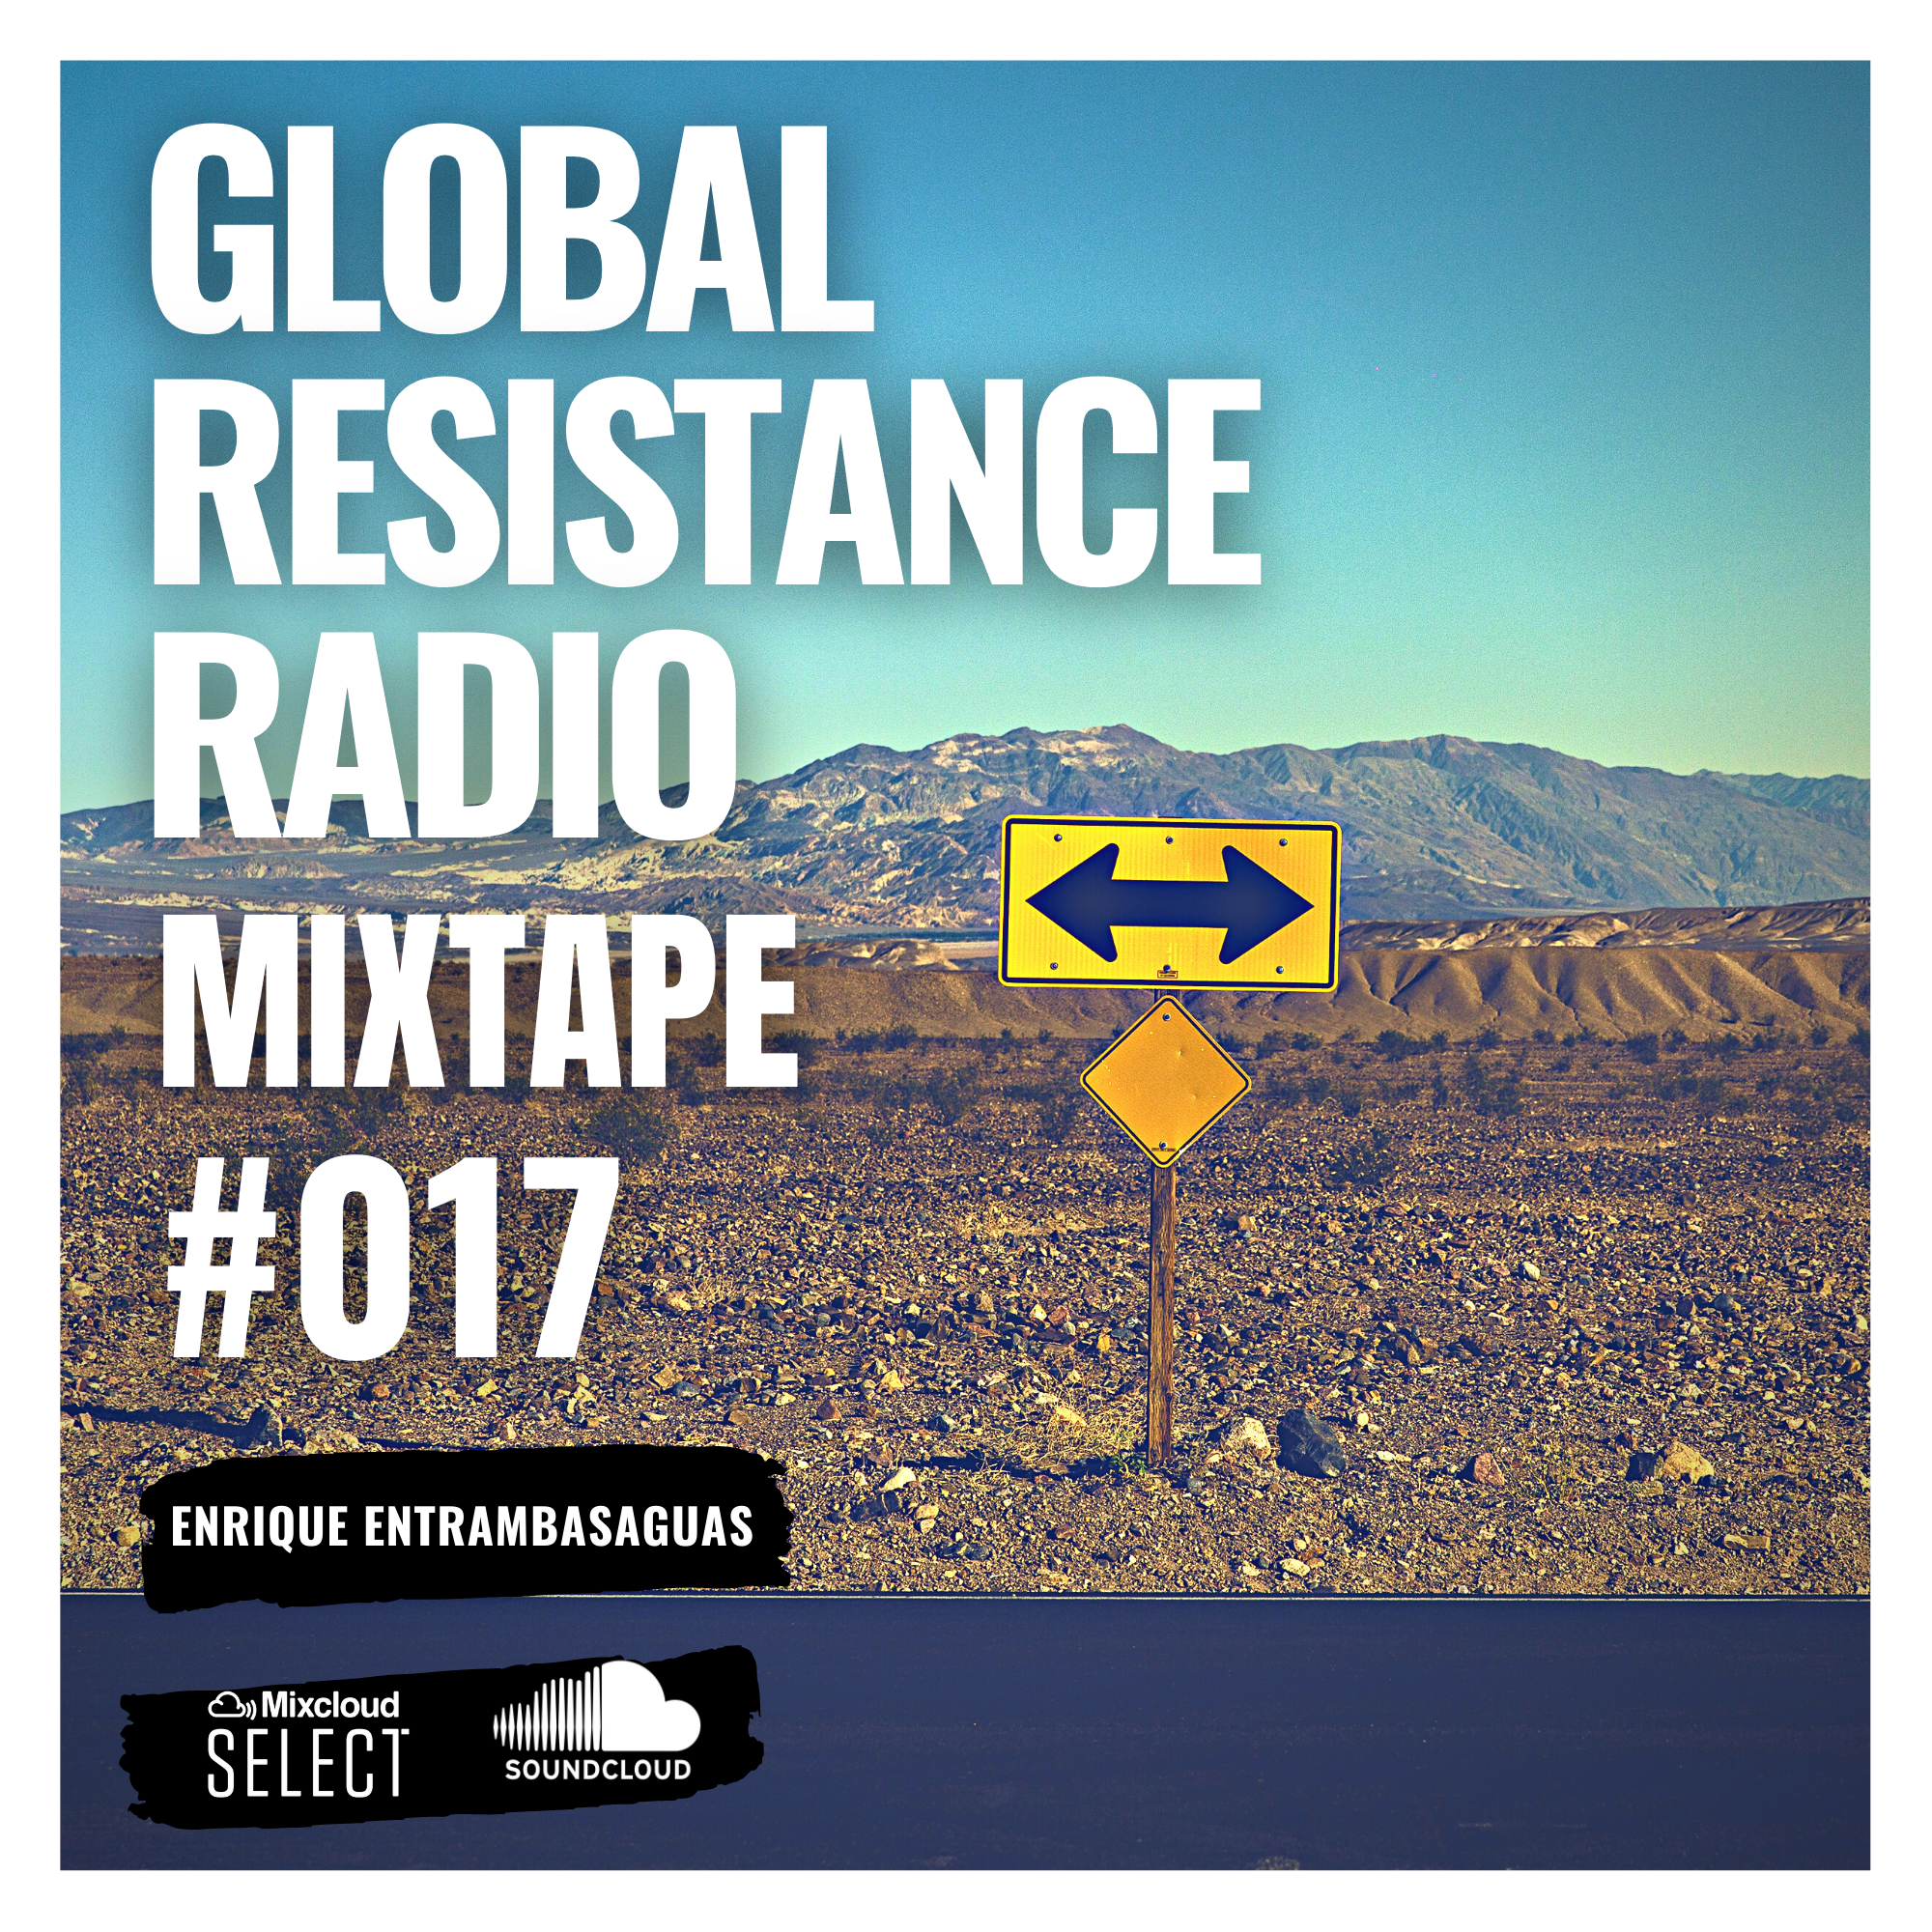 Dj Mix Nunca Estamos Solos Mixtape #017 Global Resistance Radio Enrique Entrambasaguas Dj